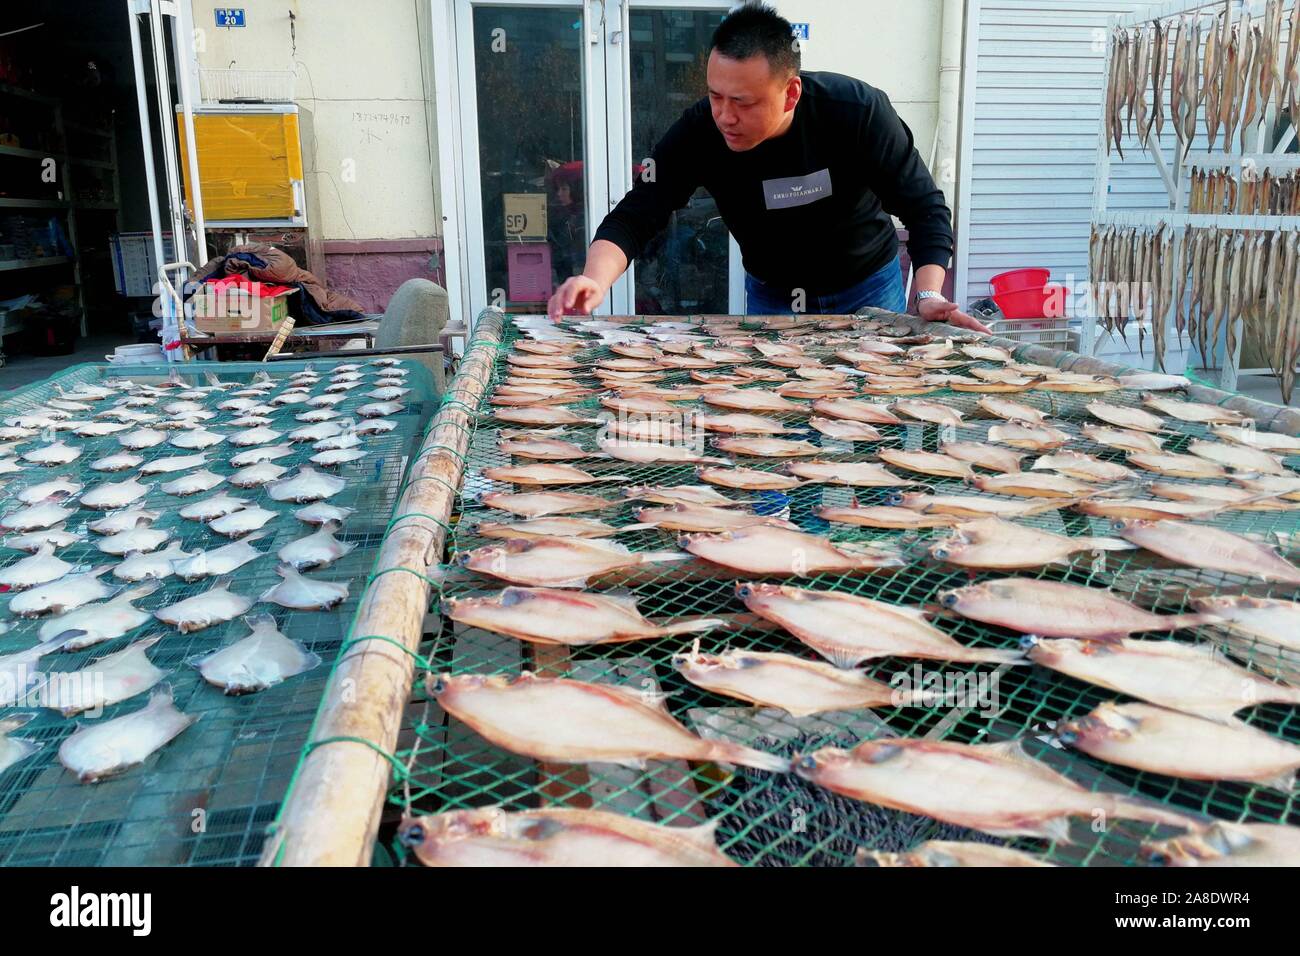 Shandong, China. 7 nov, 2019. Los pescadores cuelgan el pescado seco en el puerto pesquero Jimiya mercado oriental en Qingdao, Provincia de Shandong, China. Secar el pescado a finales de otoño y principios de invierno es una tradición de pescadores en la península de Jiaodong. Los pescadores seleccione primero el pescado fresco del mar, corte la espalda y espolvorear las capas de sal gruesa, luego agregar la sal durante un corto periodo de tiempo, alrededor de una hora y, a continuación, enjuague con agua limpia. Por último, su propagación en la red de pesca o colgarlos para que se sequen. Cuando son 70% secas pueden ser comidos. Crédito: SIPA Asia/Zuma alambre/Alamy Live News Foto de stock